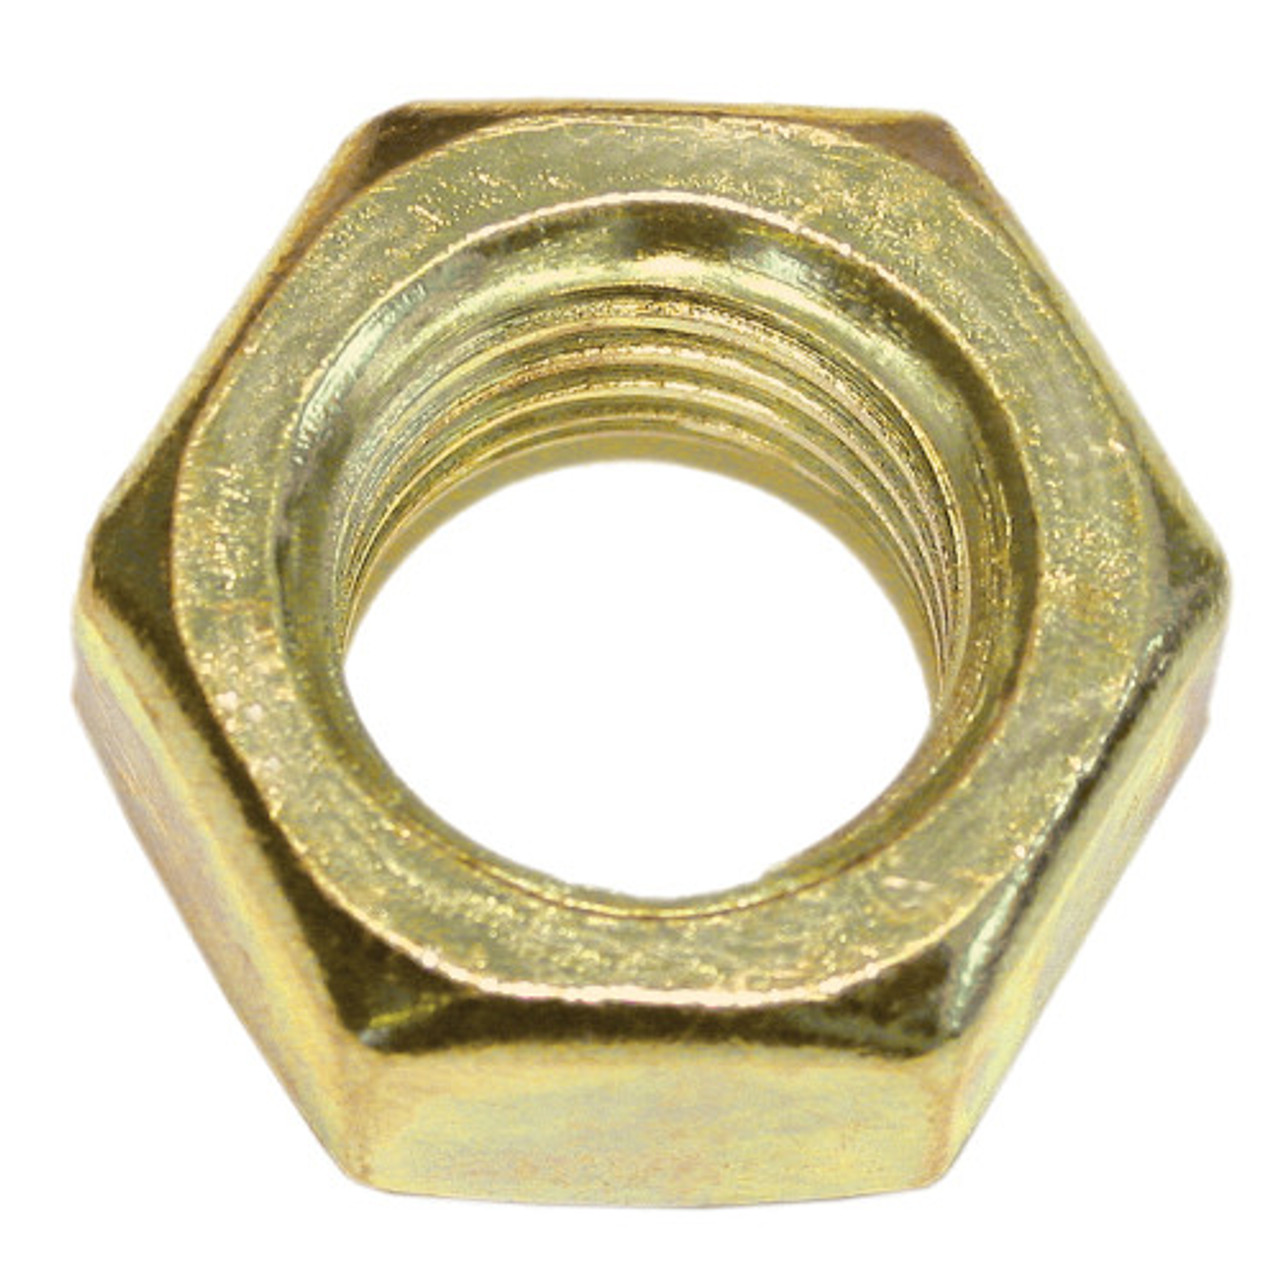 #2-56 Brass Machine Screw Hex Nut 100 Pc.   5636-002